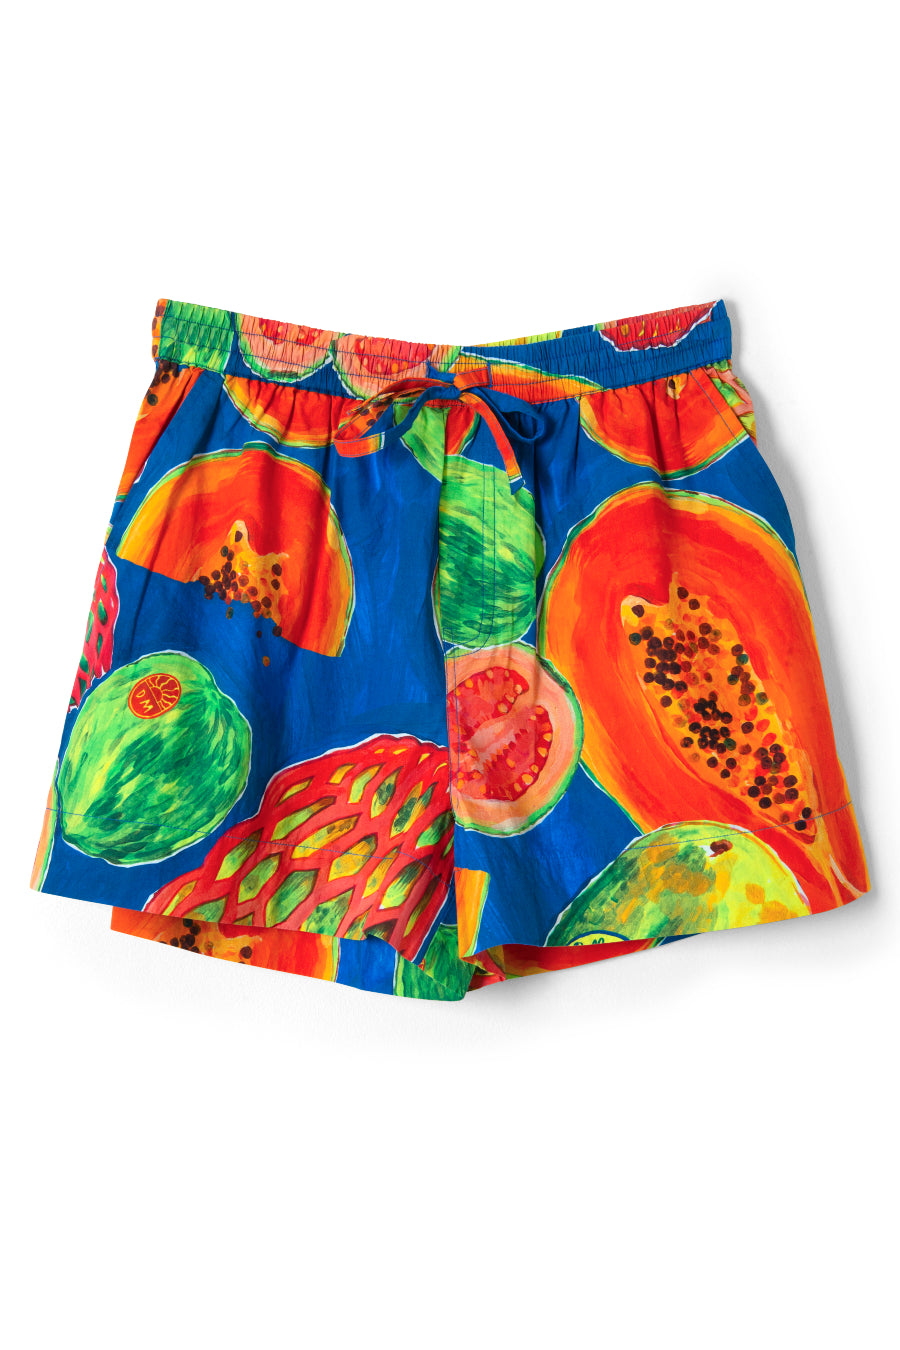 pull on shorts - papaya print